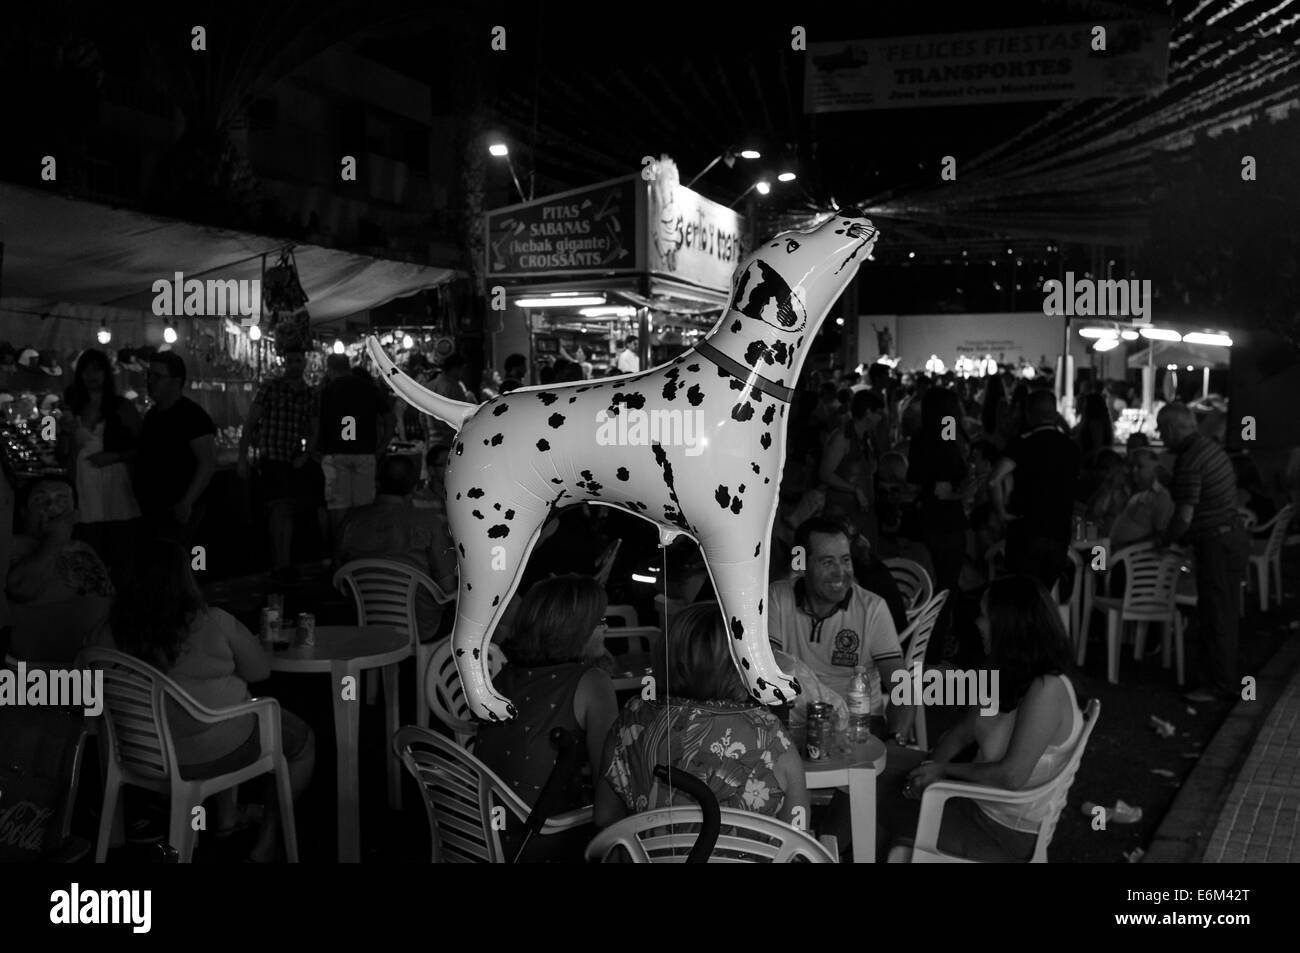 Palloncino elio conformata come un cane dalmata galleggianti al di sopra dei festaioli all'annuale di San Juan fiesta, Tenerife, Isole Canarie, Spagna. Foto Stock